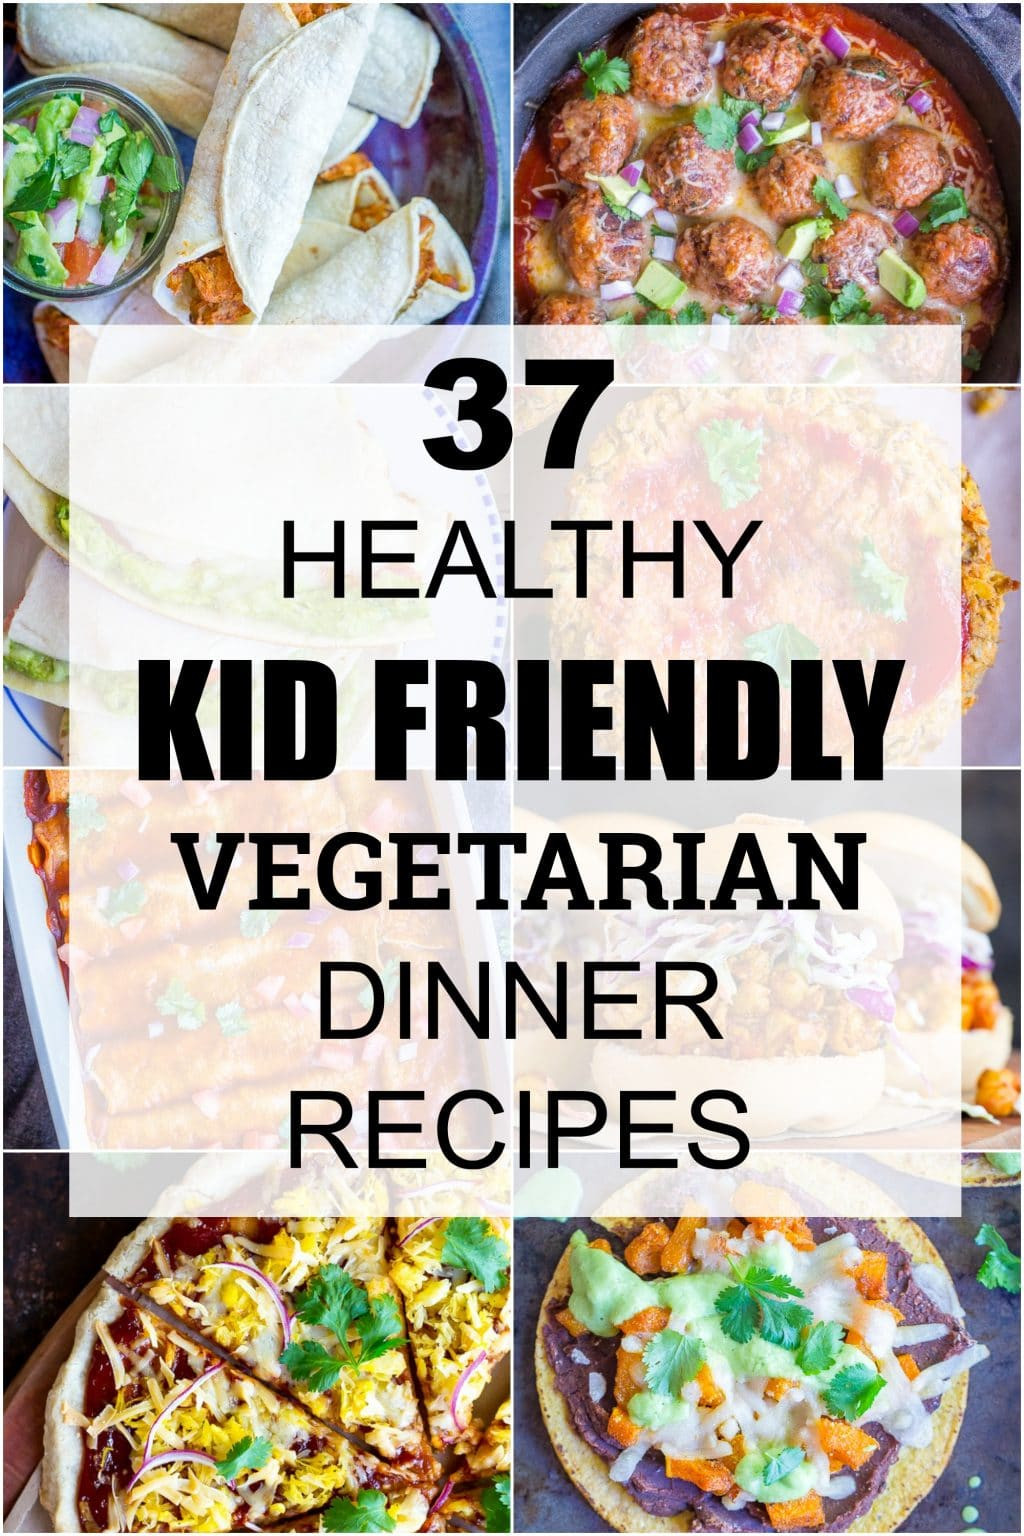 Easy Vegan Dinner Recipes For Family
 37 Healthy Kid Friendly Ve arian Dinner Recipes She